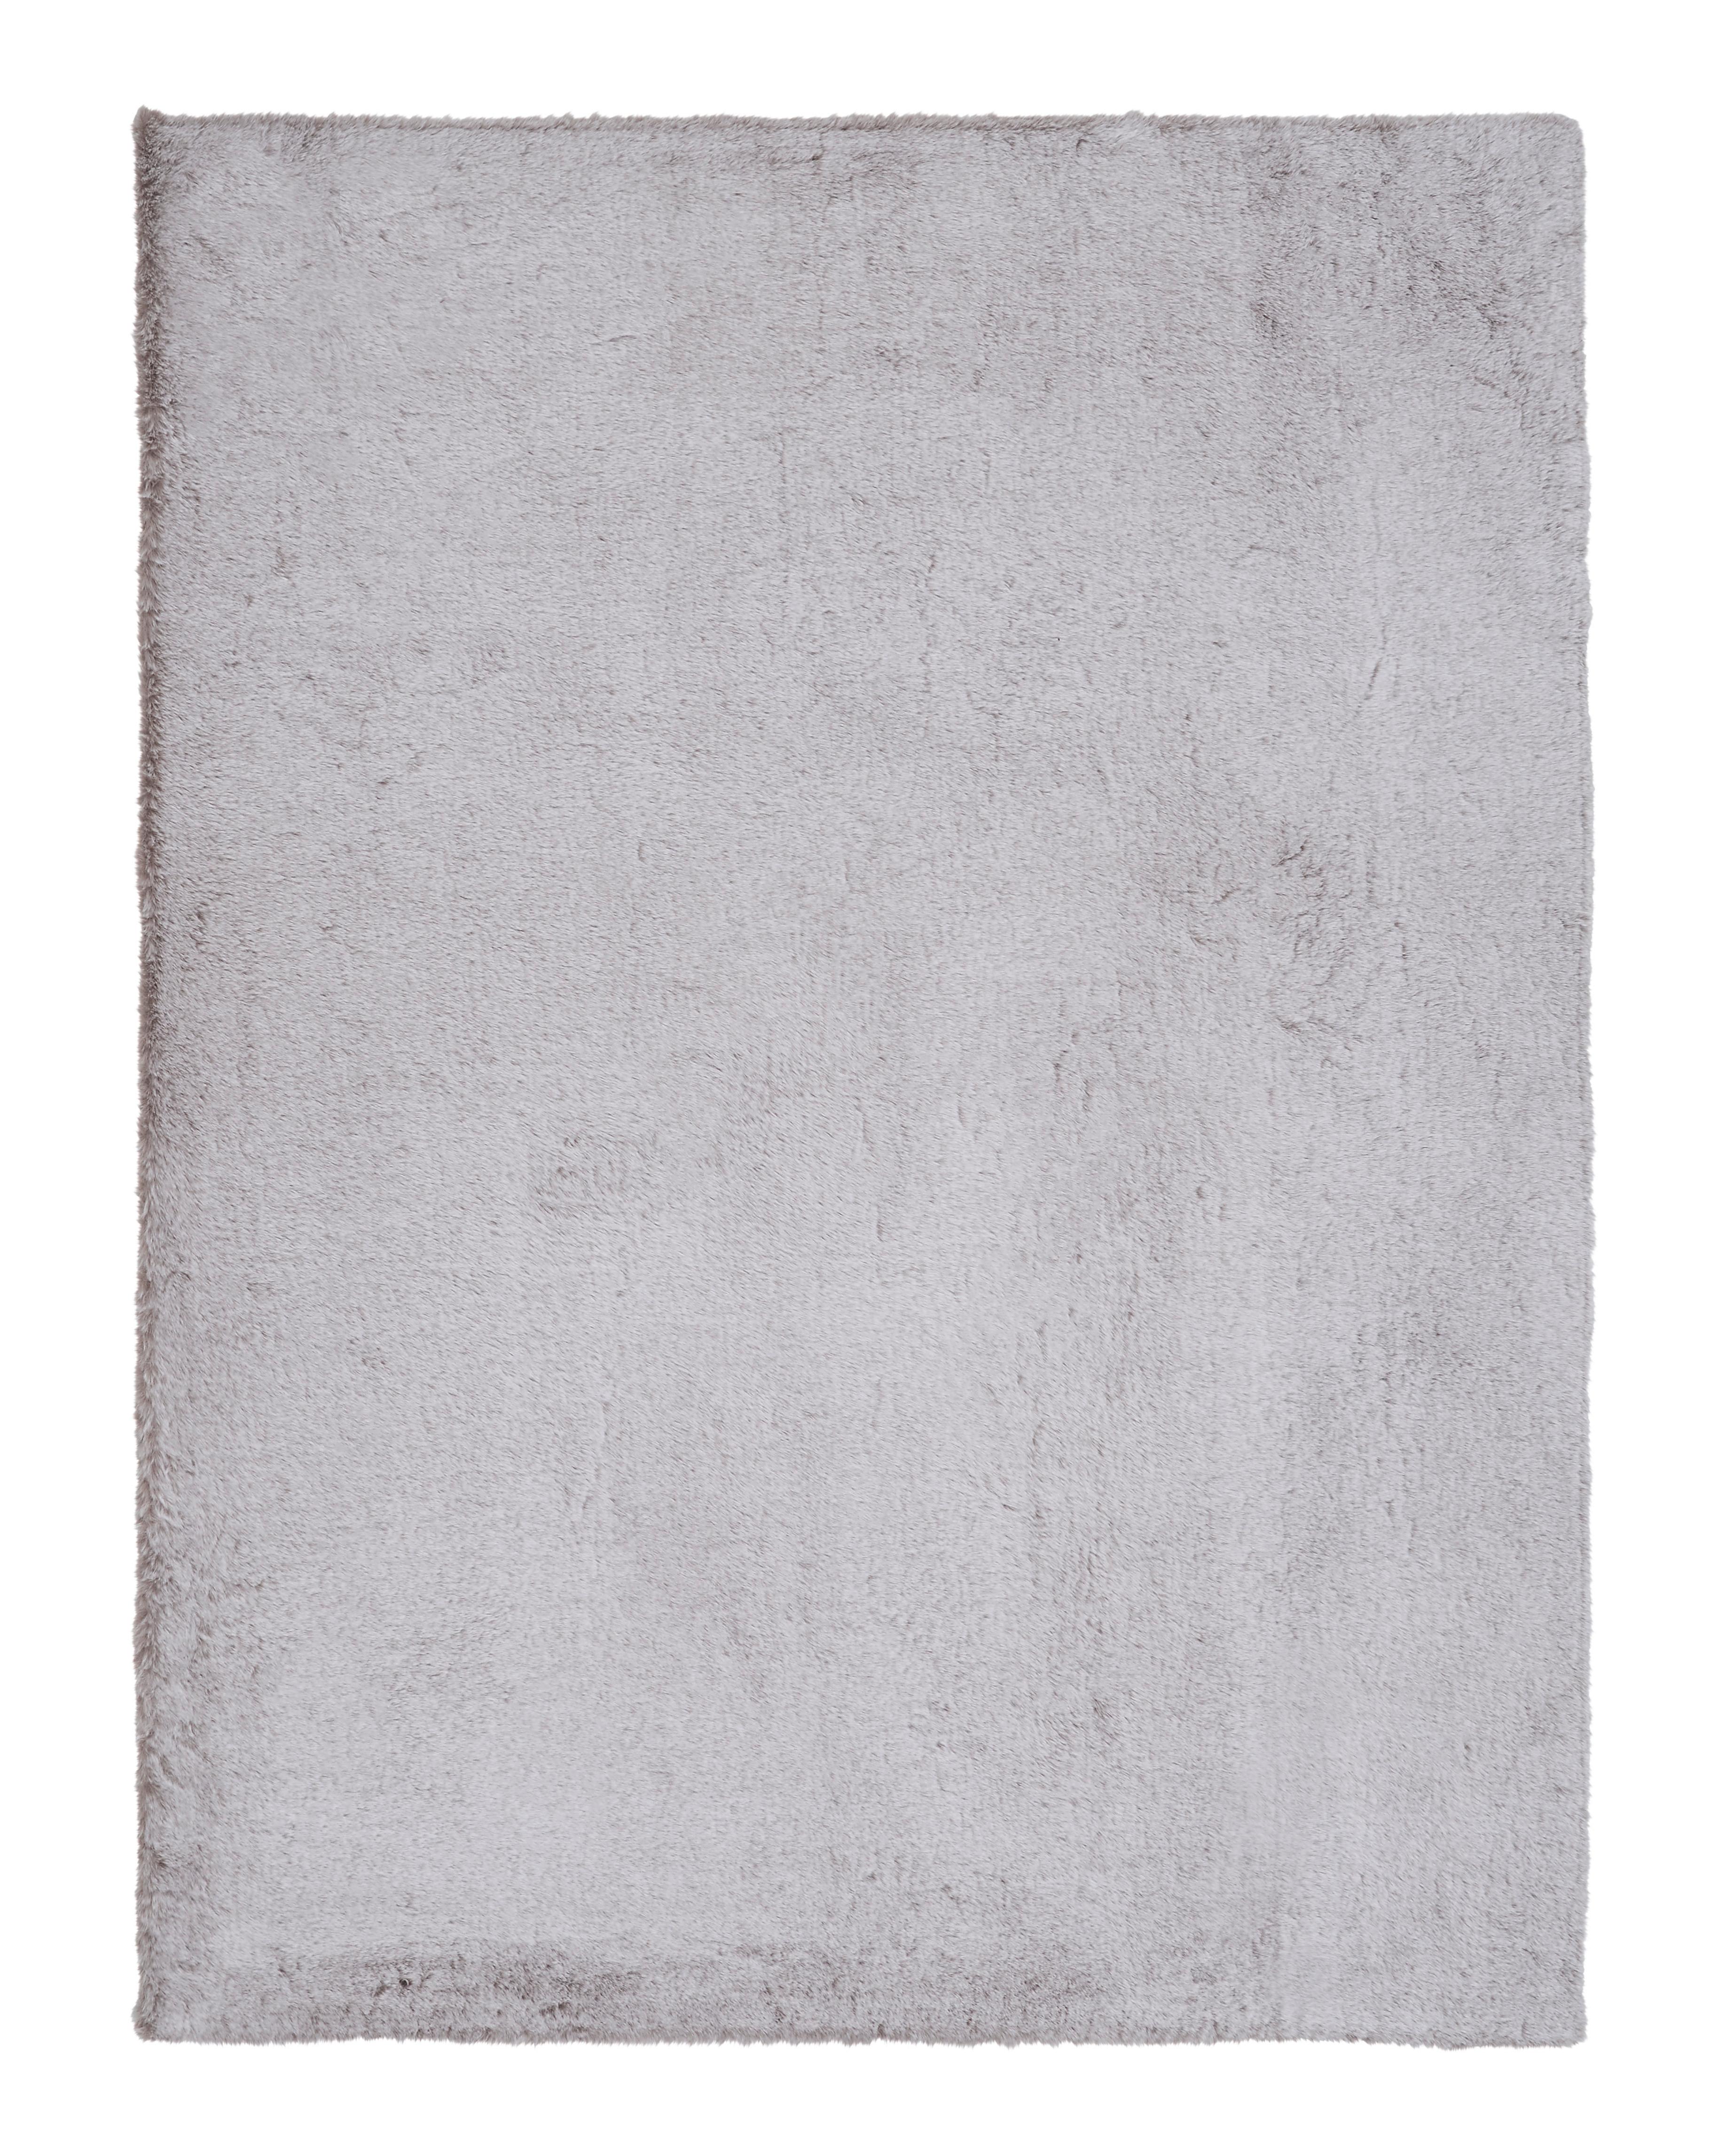 Kunstfell Denise 2 Rosa ca.120x160cm - Rosa, ROMANTIK / LANDHAUS, Textil/Fell (120/160cm) - Modern Living